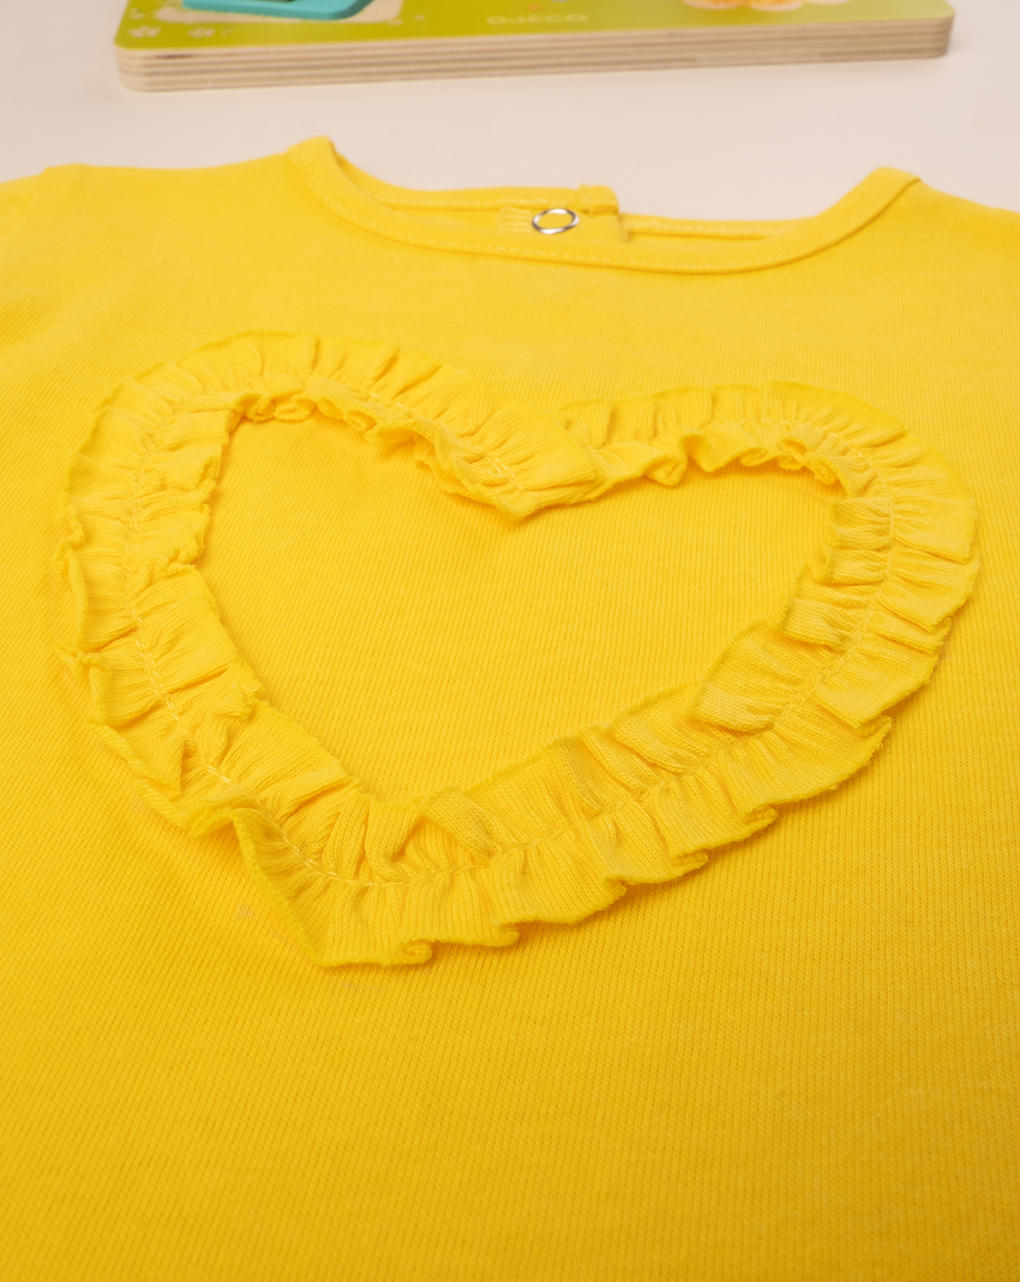 βρεφικό t-shirt κίτρινο με καρδούλα για κορίτσι - Prénatal